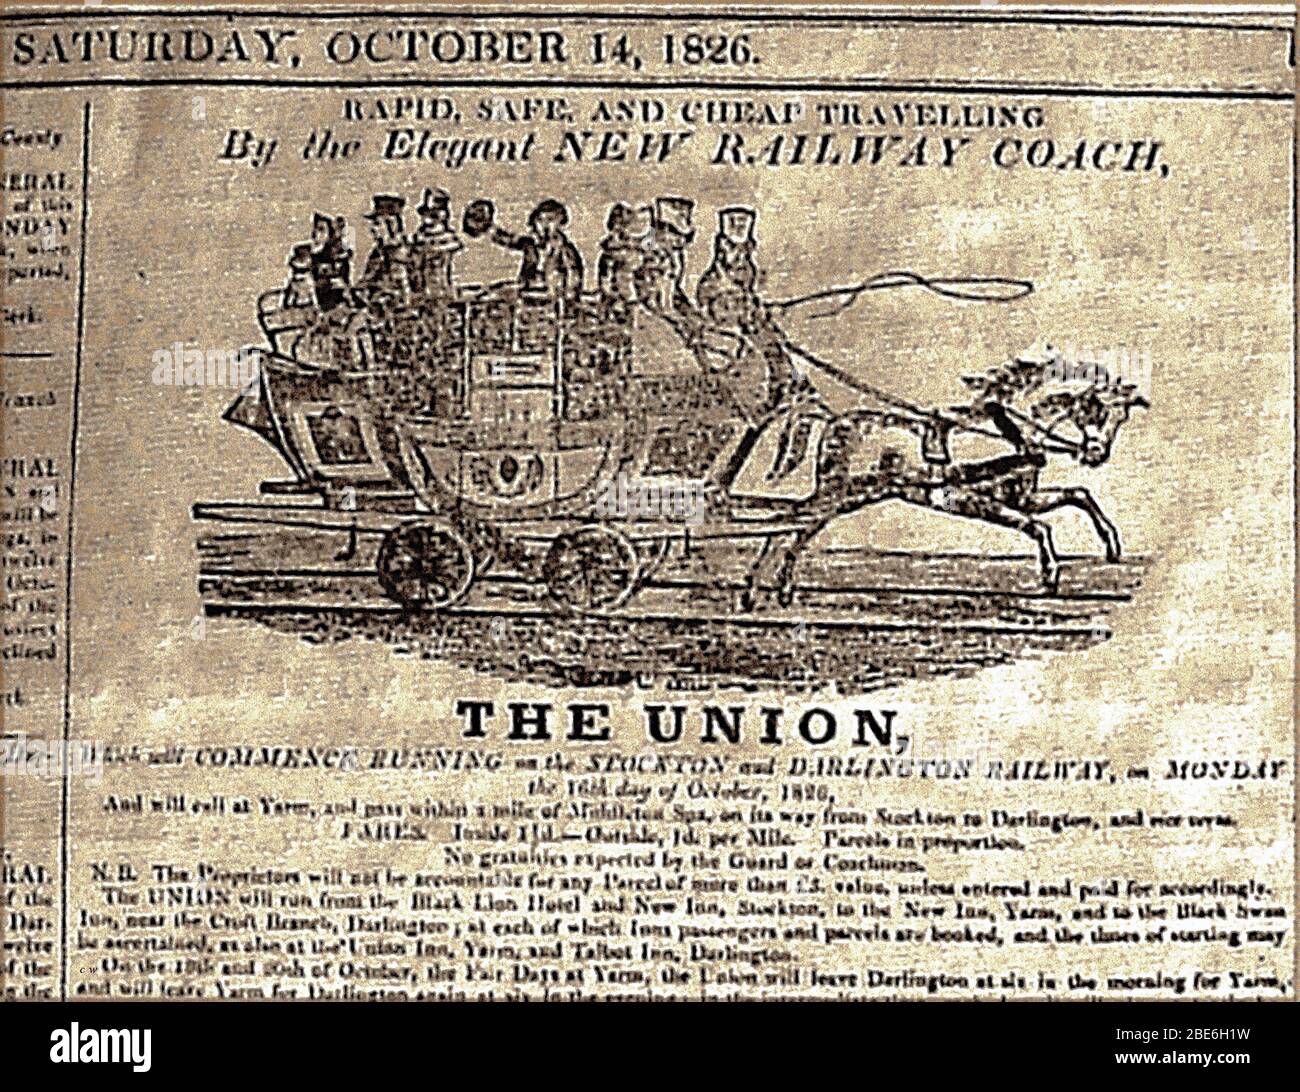 Eine alte Zeitungsmitteilung vom Oktober 1826, in der der Beginn des von der Union Horse gezogenen Dienstes auf der Stockton-Darlington-Eisenbahn angekündigt wird. Es wird als schnell, billig und sicher angekündigt. Eine Reihe von Städten, Gasthäusern und Hotels sind in der Werbung erwähnt. Stockfoto